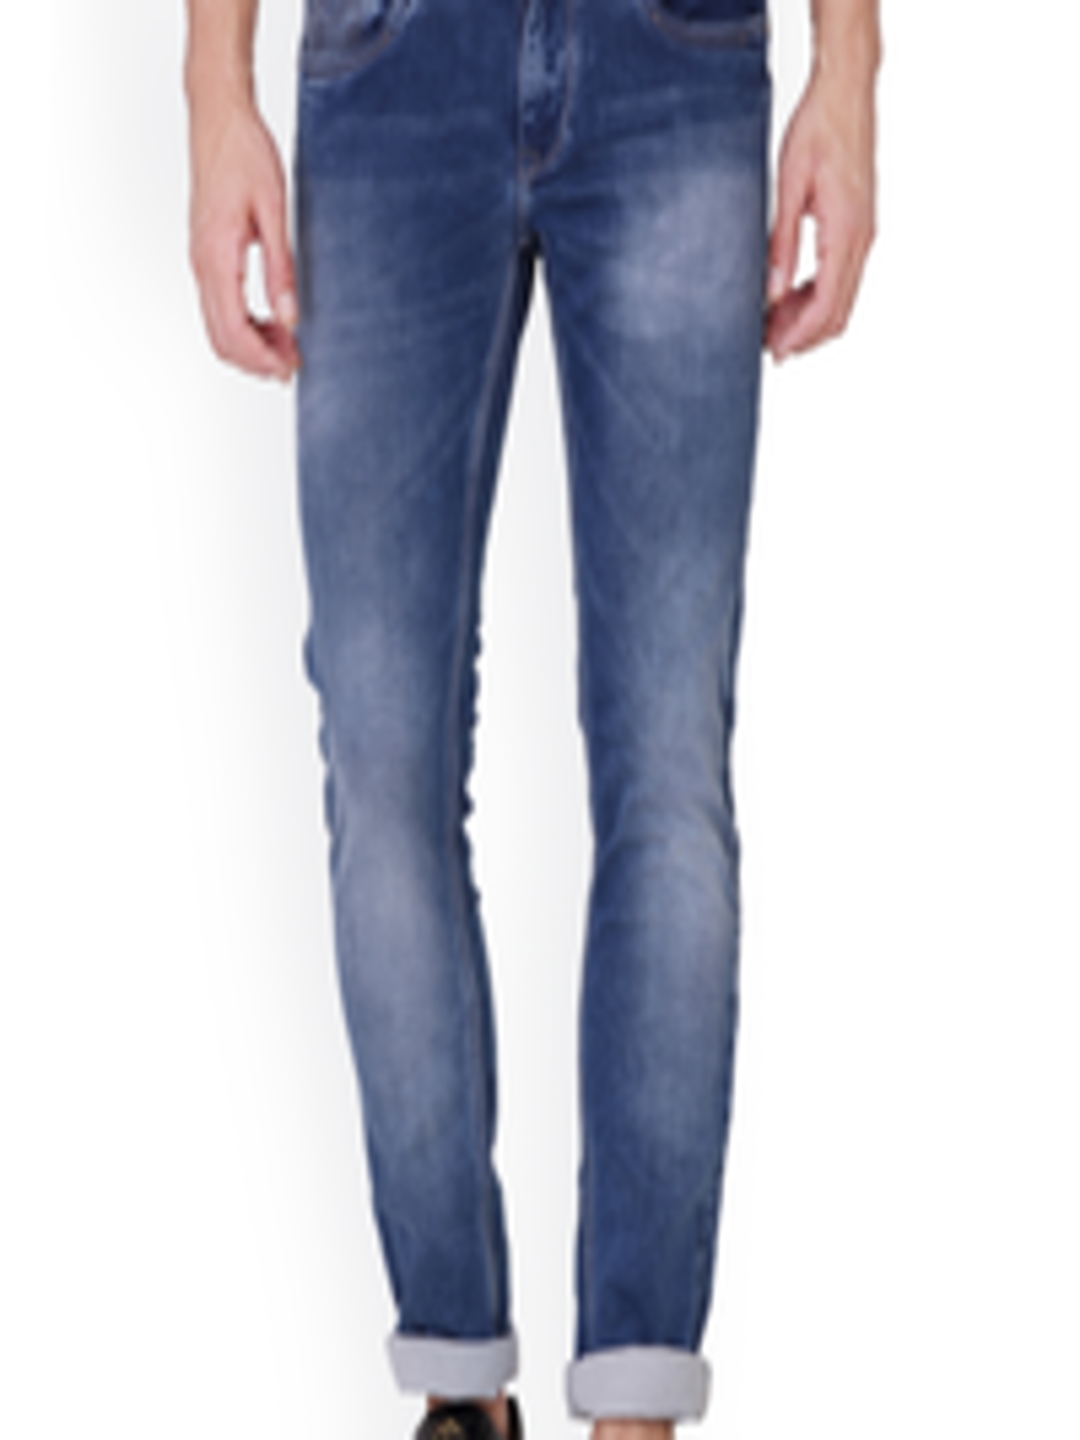 Buy KOZZAK Men Blue Skinny Fit Low Rise Clean Look Stretchable Jeans ...